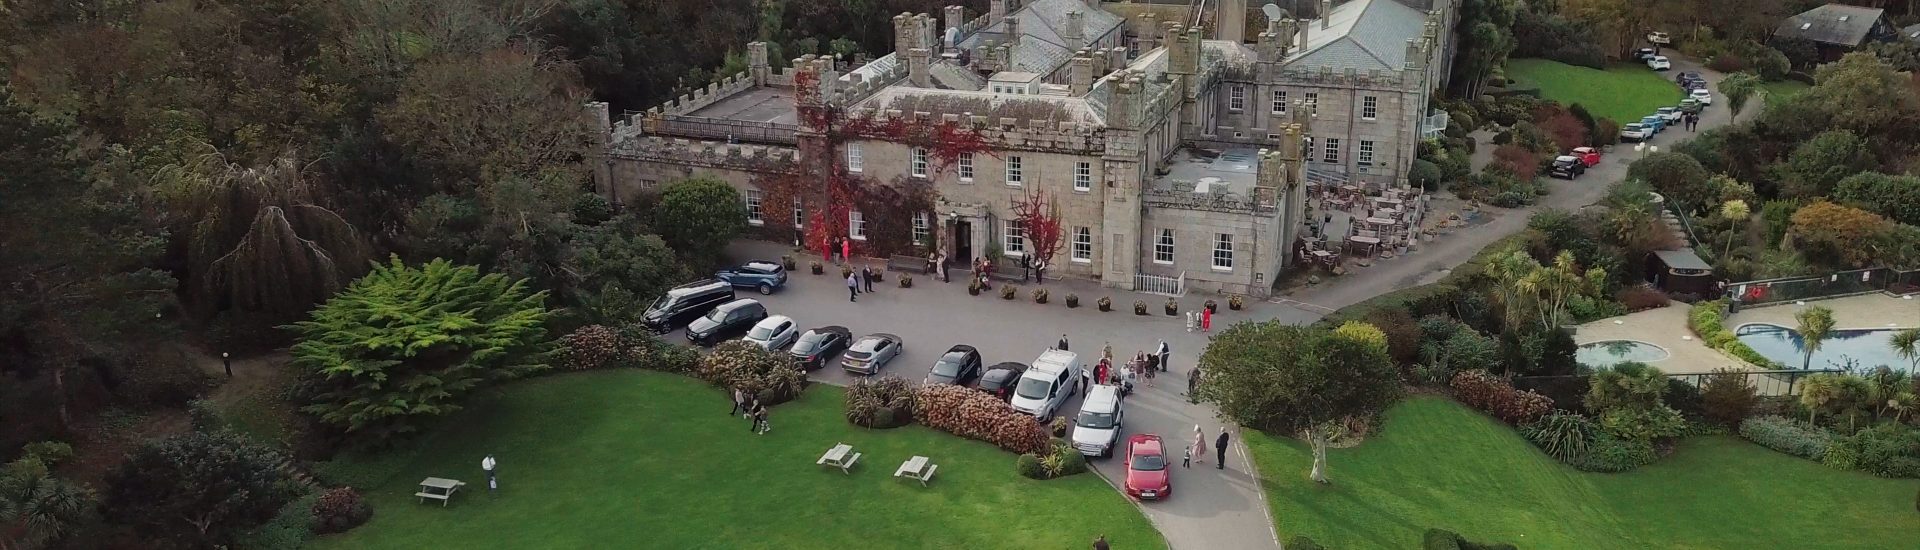 Tregenna Castle Wedding Film in St Ives